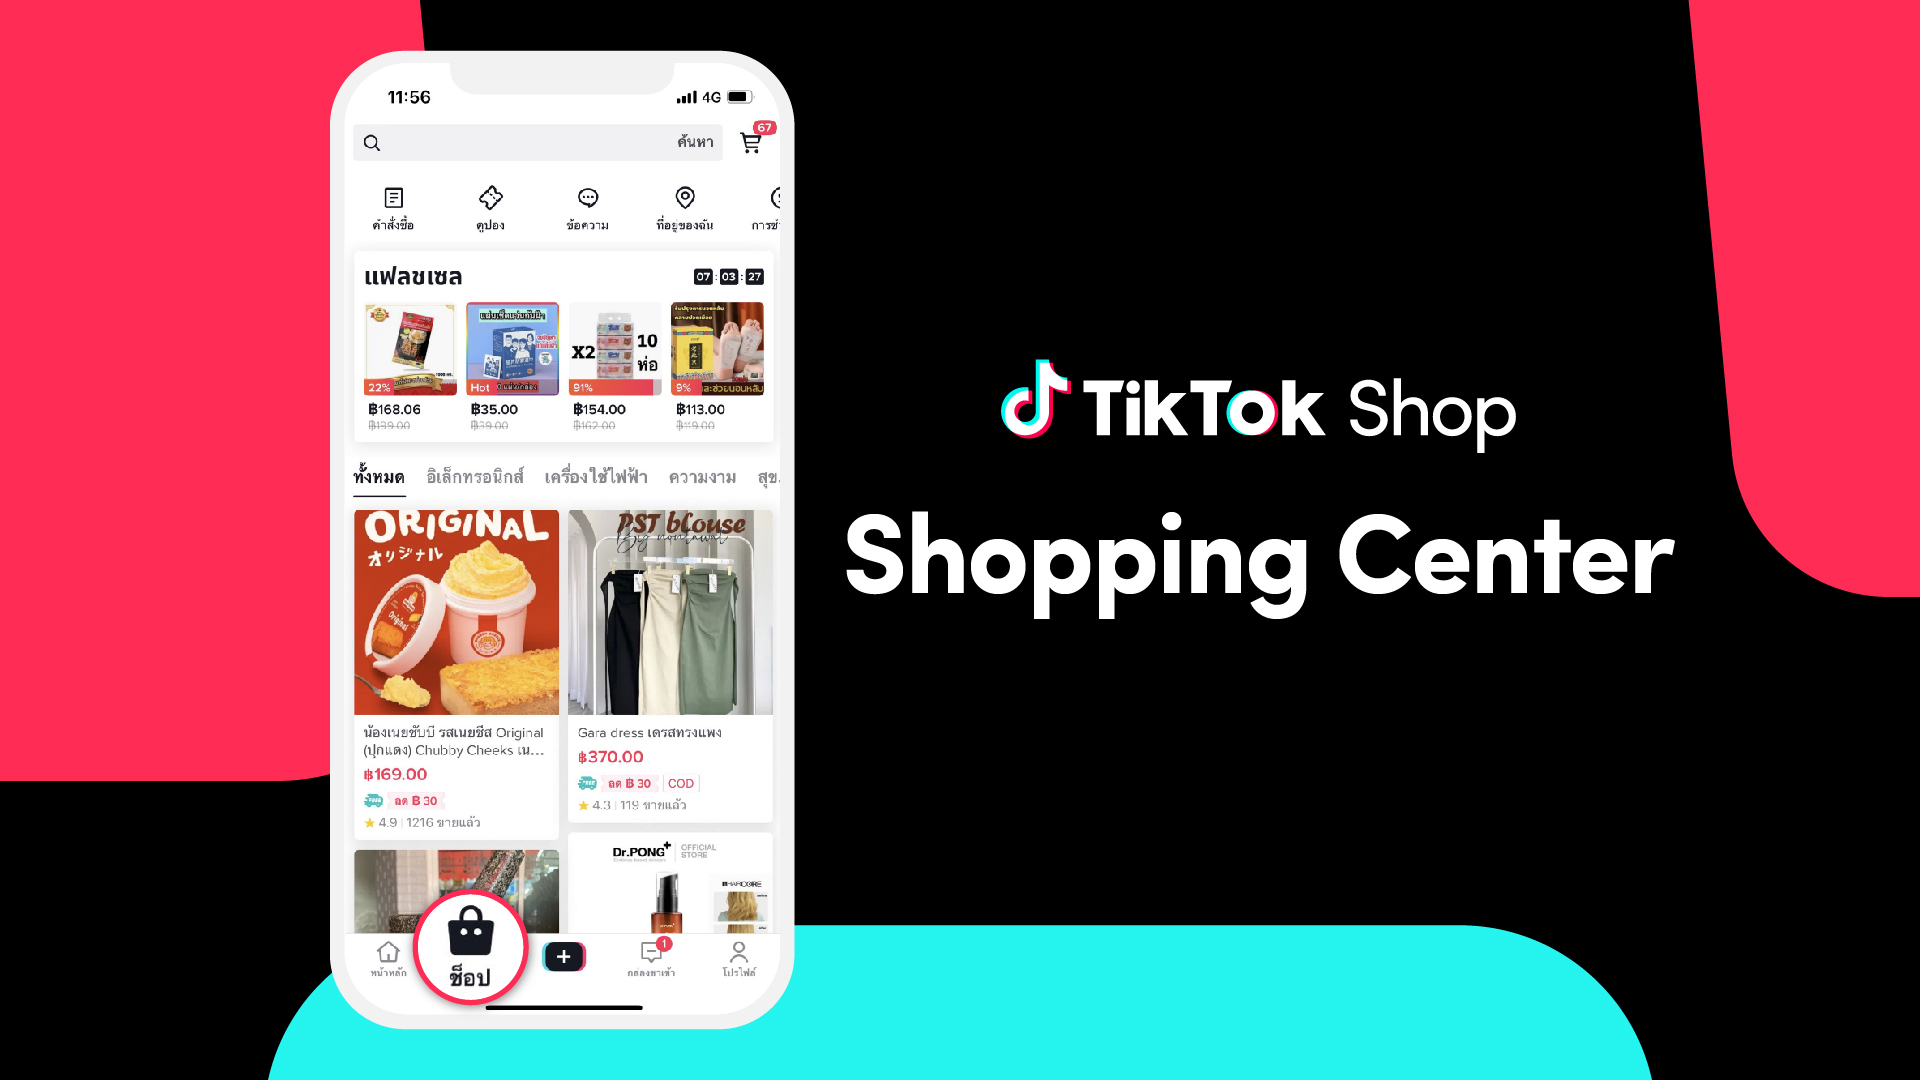 TikTok ยกระดับประสบการณ์ช้อปปิ้งออนไลน์ พร้อมปลดล็อกศักยภาพอีคอมเมิร์ซ ด้วย TikTok Shop Shopping Center